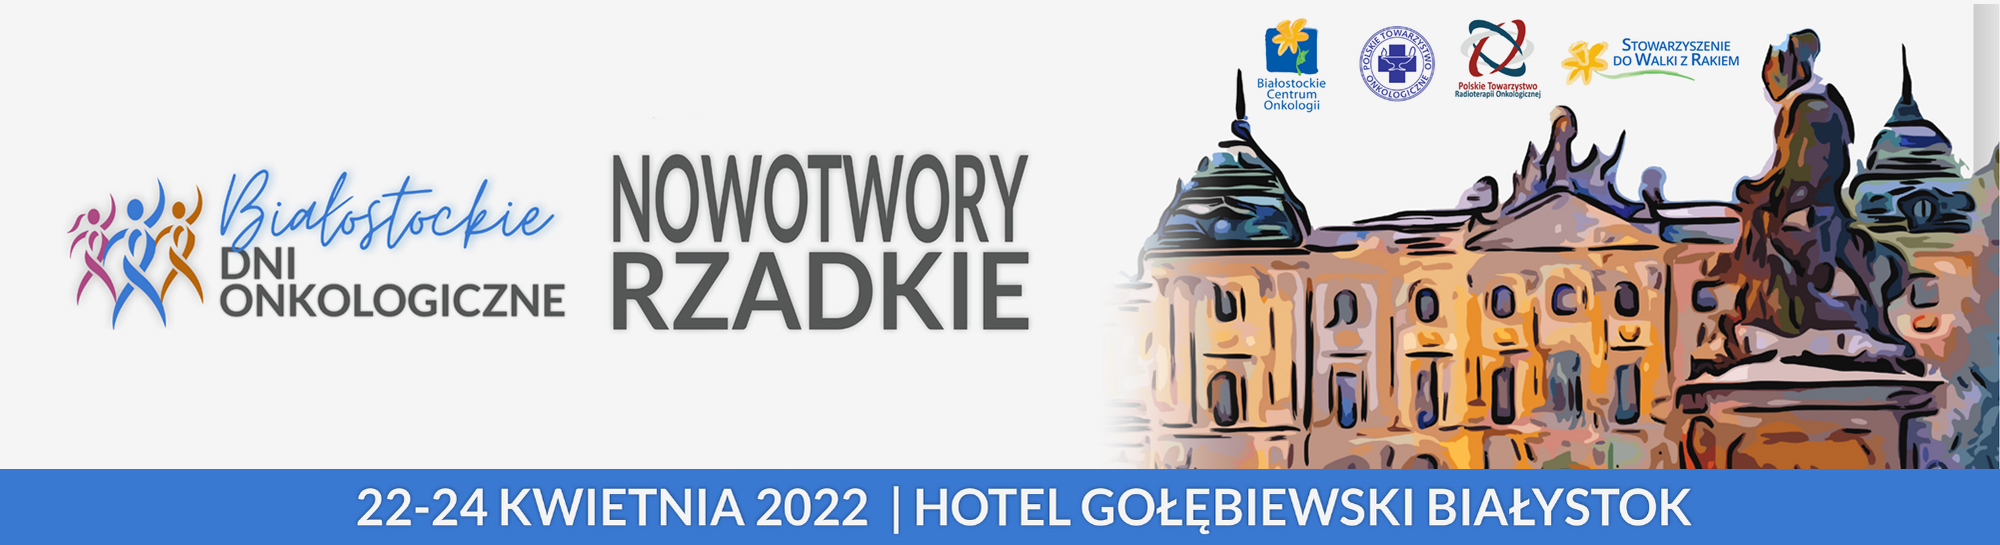 Białostockie Dni Onkologiczne 2022 - Nowotwory rzadkie